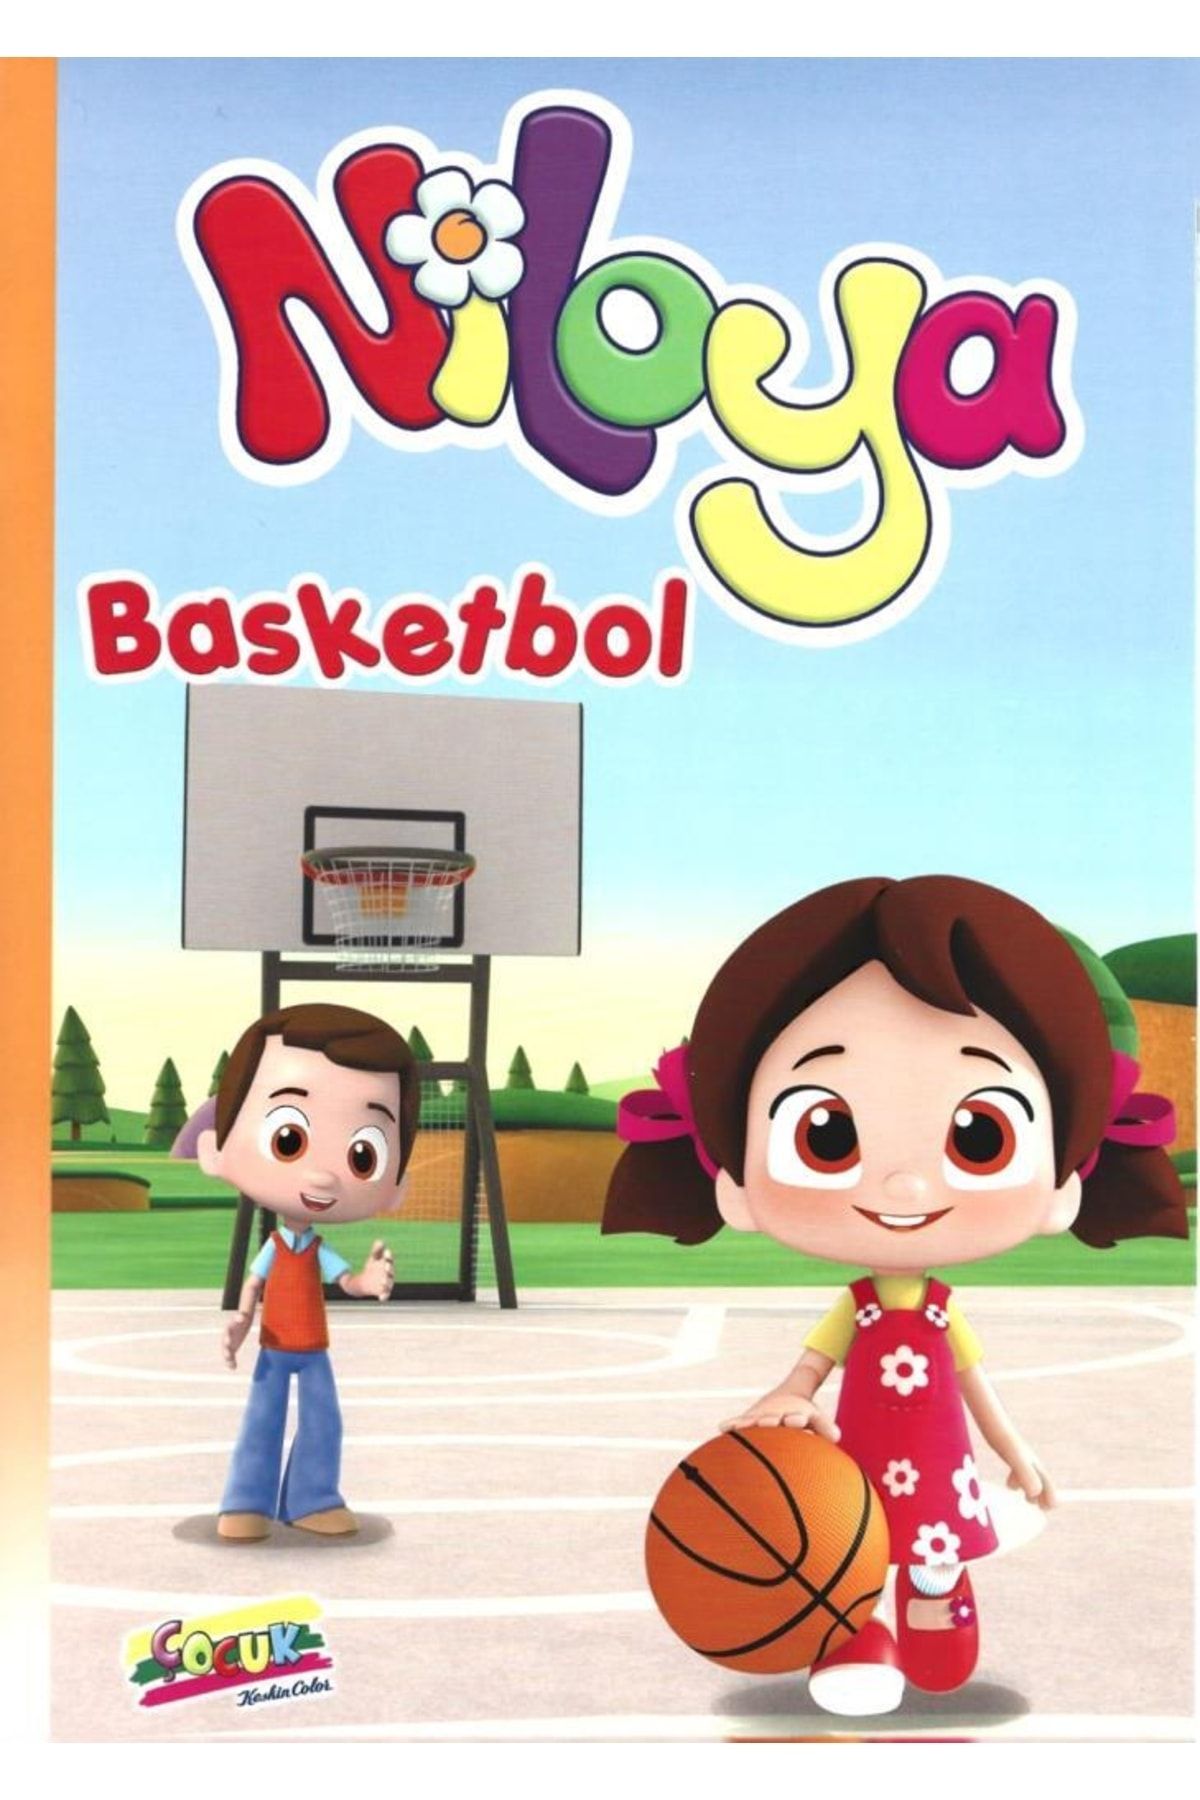 Sharp Color Niloya Storybook Basketball